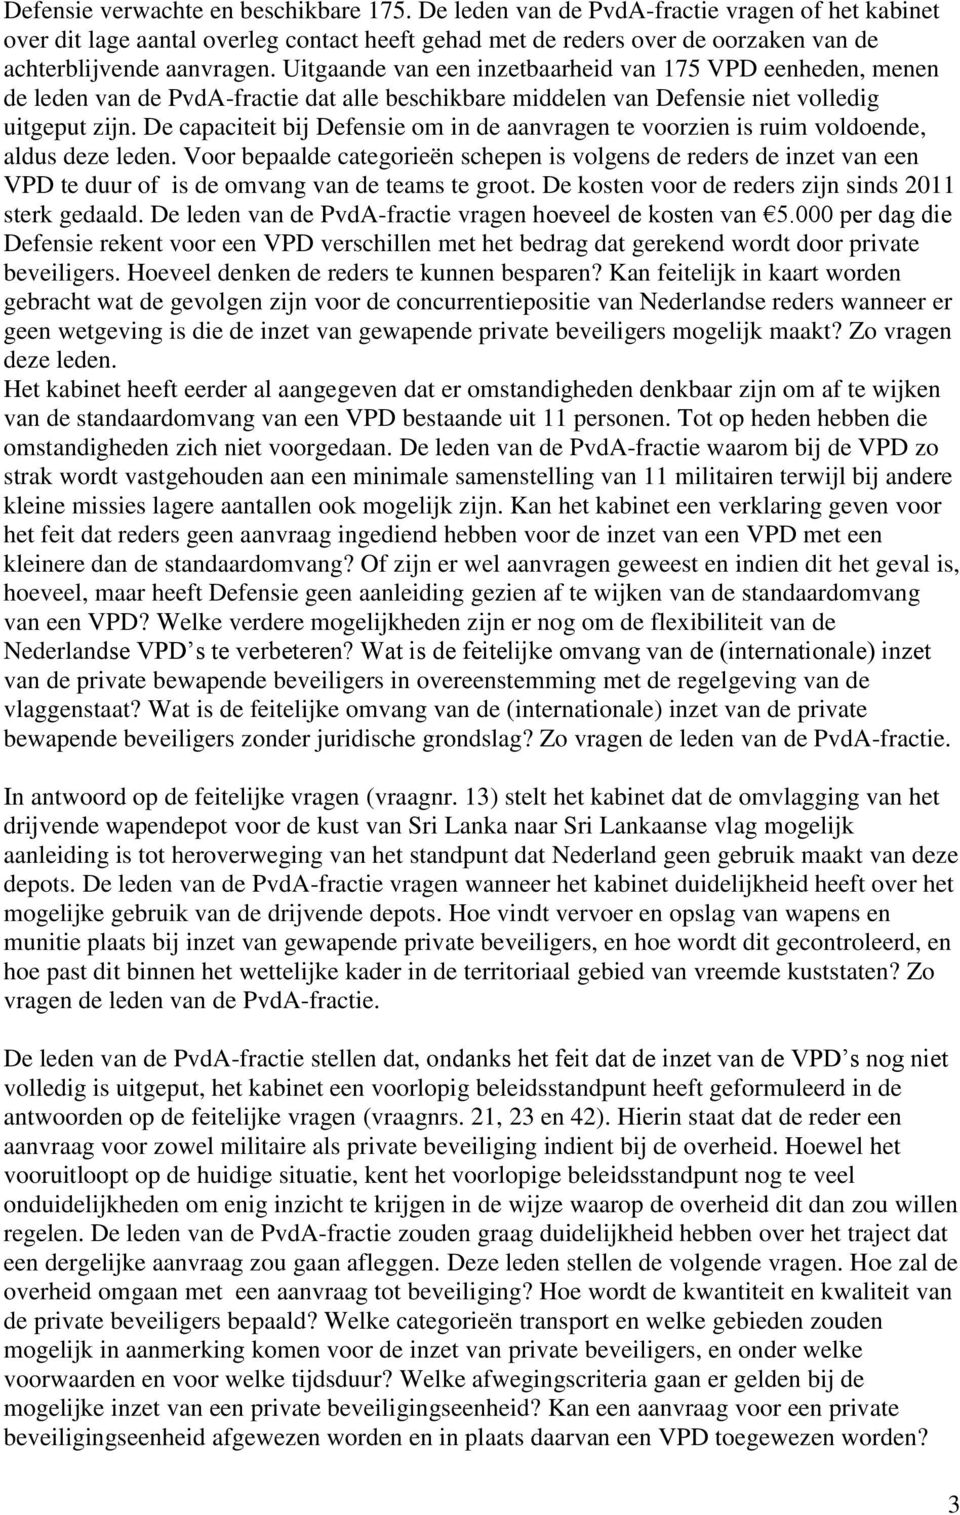 Uitgaande van een inzetbaarheid van 175 VPD eenheden, menen de leden van de PvdA-fractie dat alle beschikbare middelen van Defensie niet volledig uitgeput zijn.